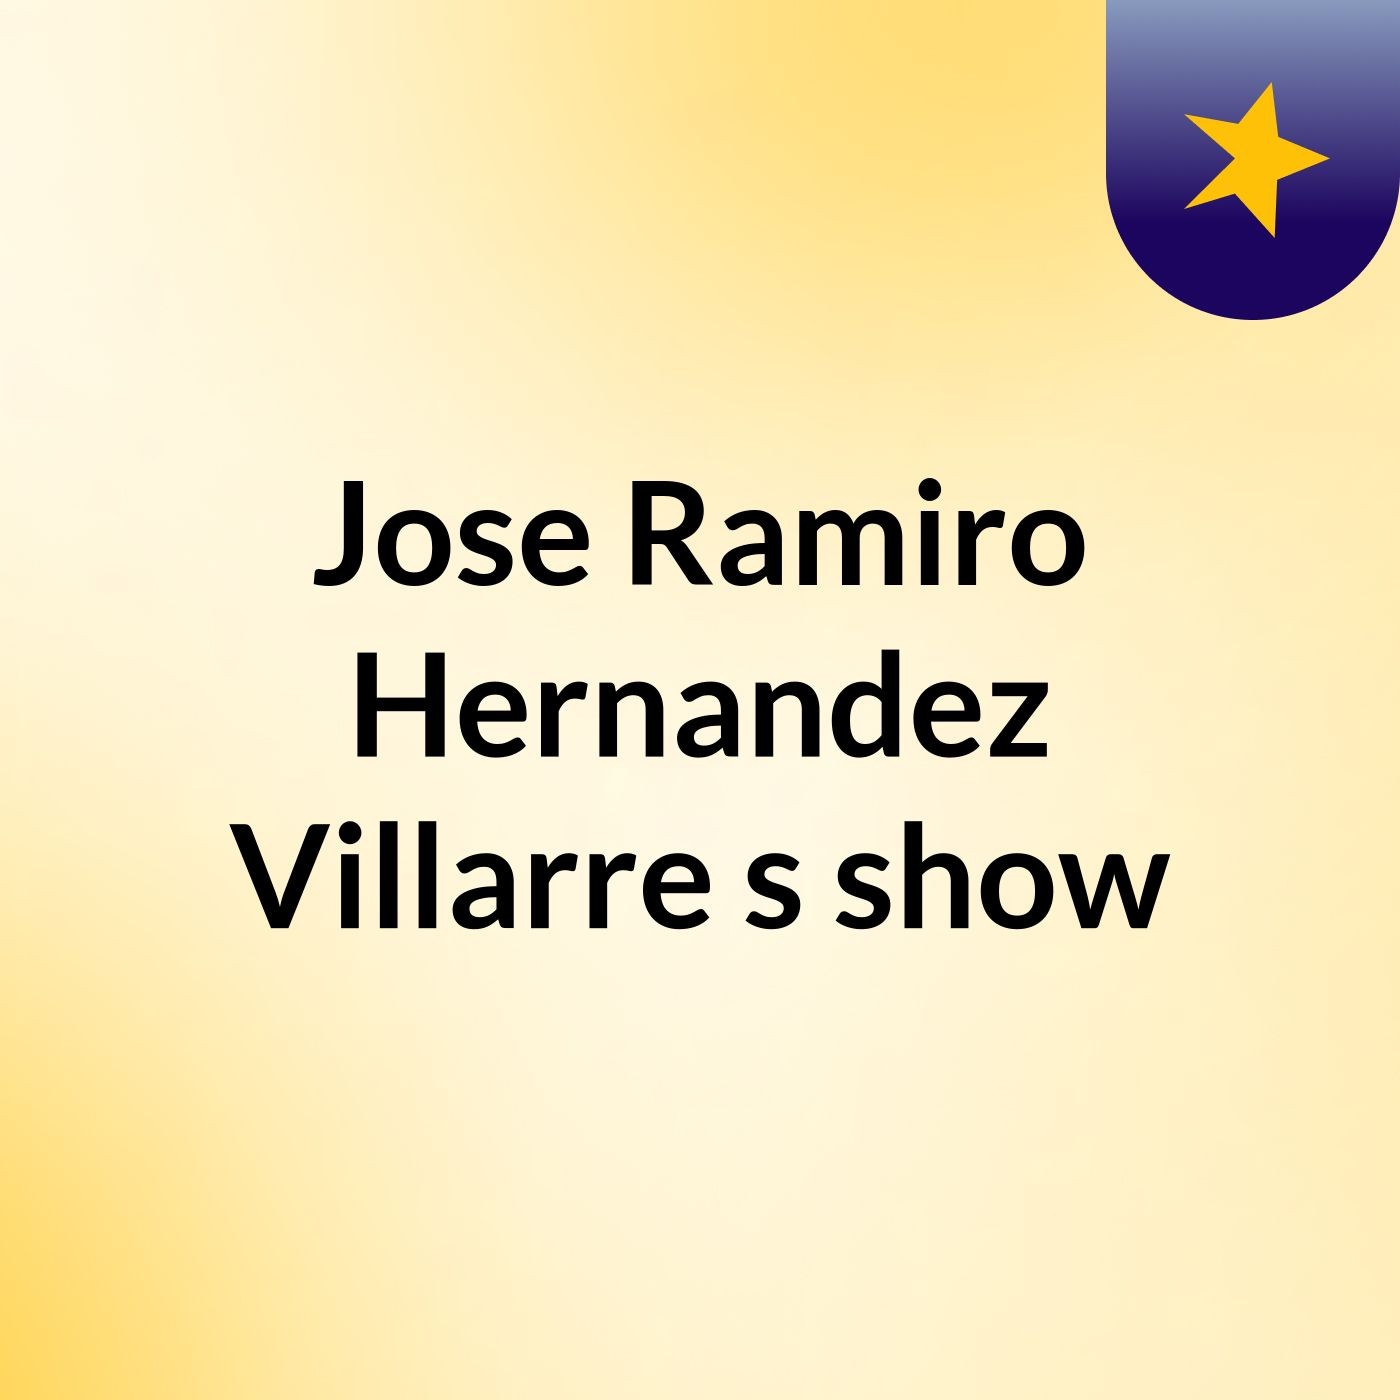 Jose Ramiro Hernandez Villarre's show